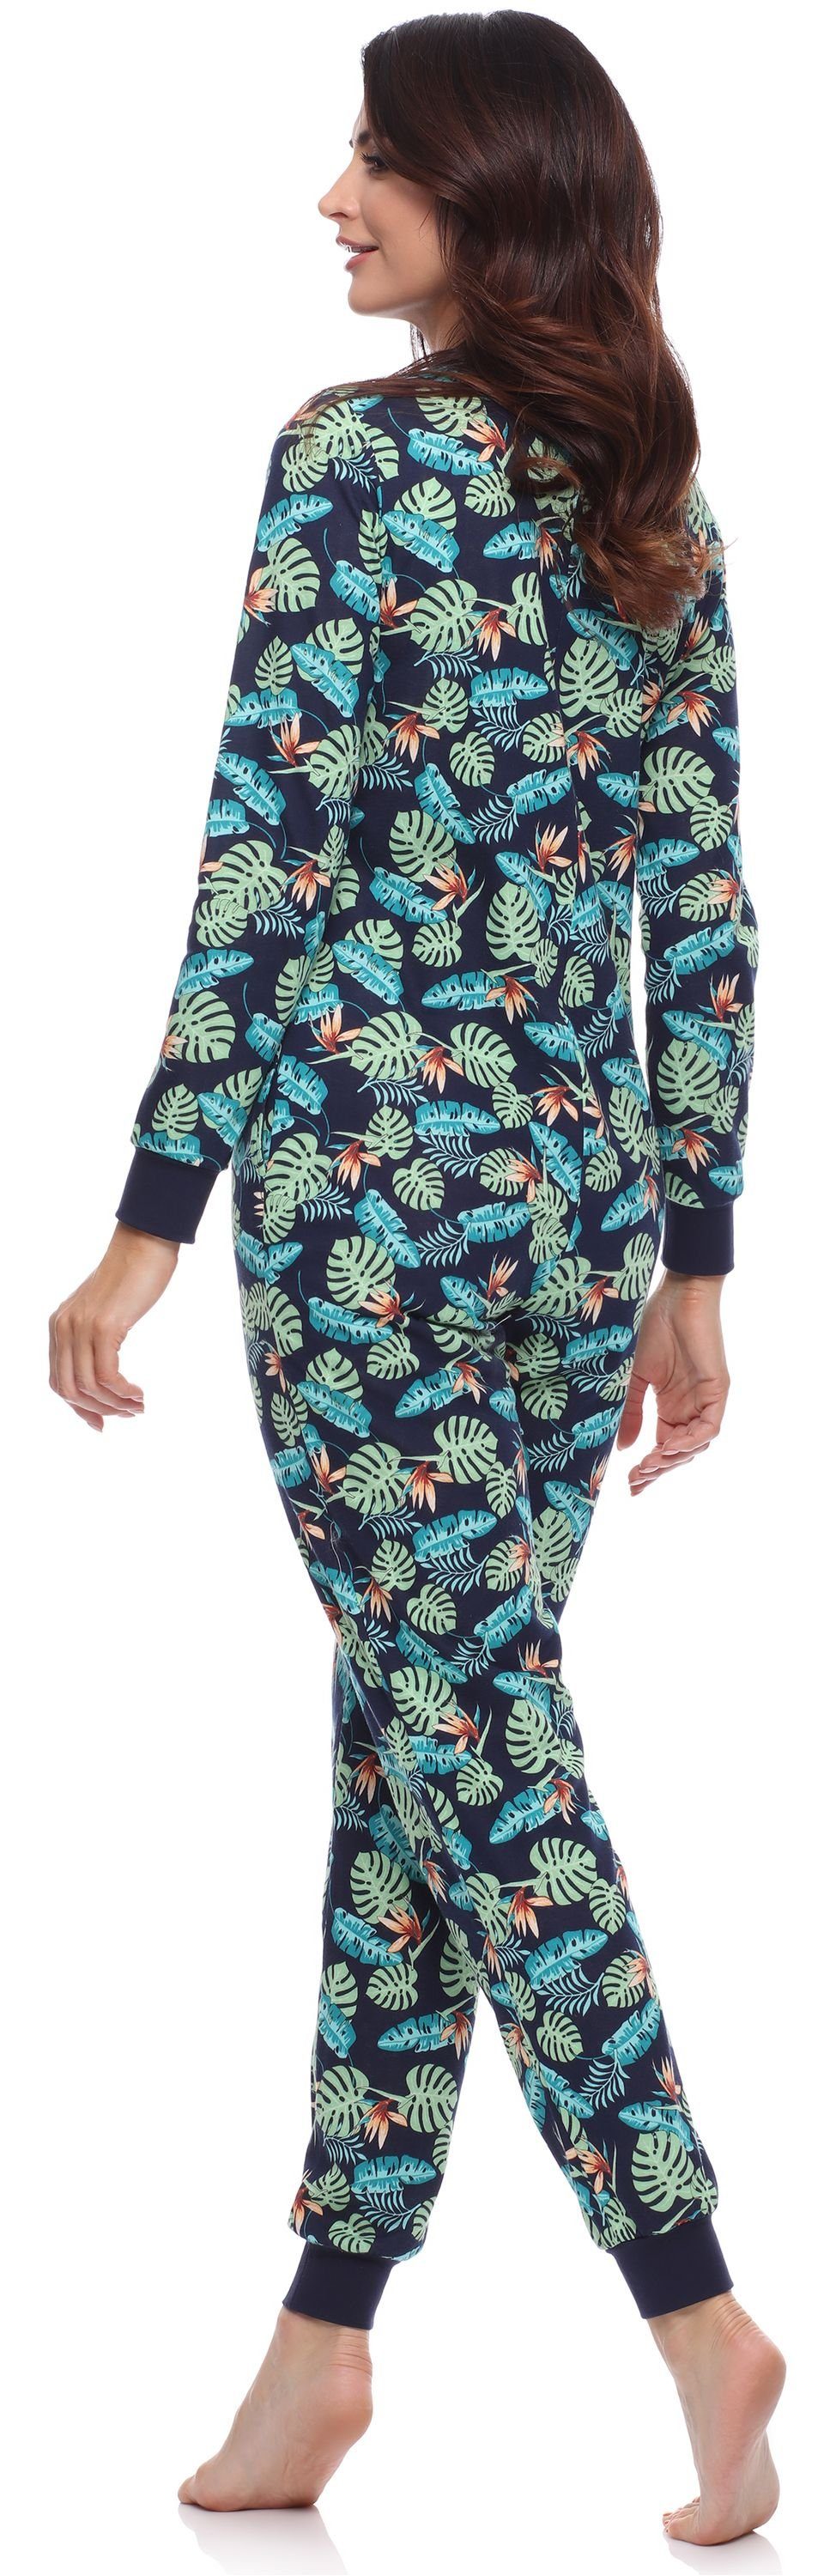 MS10-187 Merry Schlafanzug Marineblau/Blätter Schlafanzug Style Schlafoverall Strampelanzug Damen